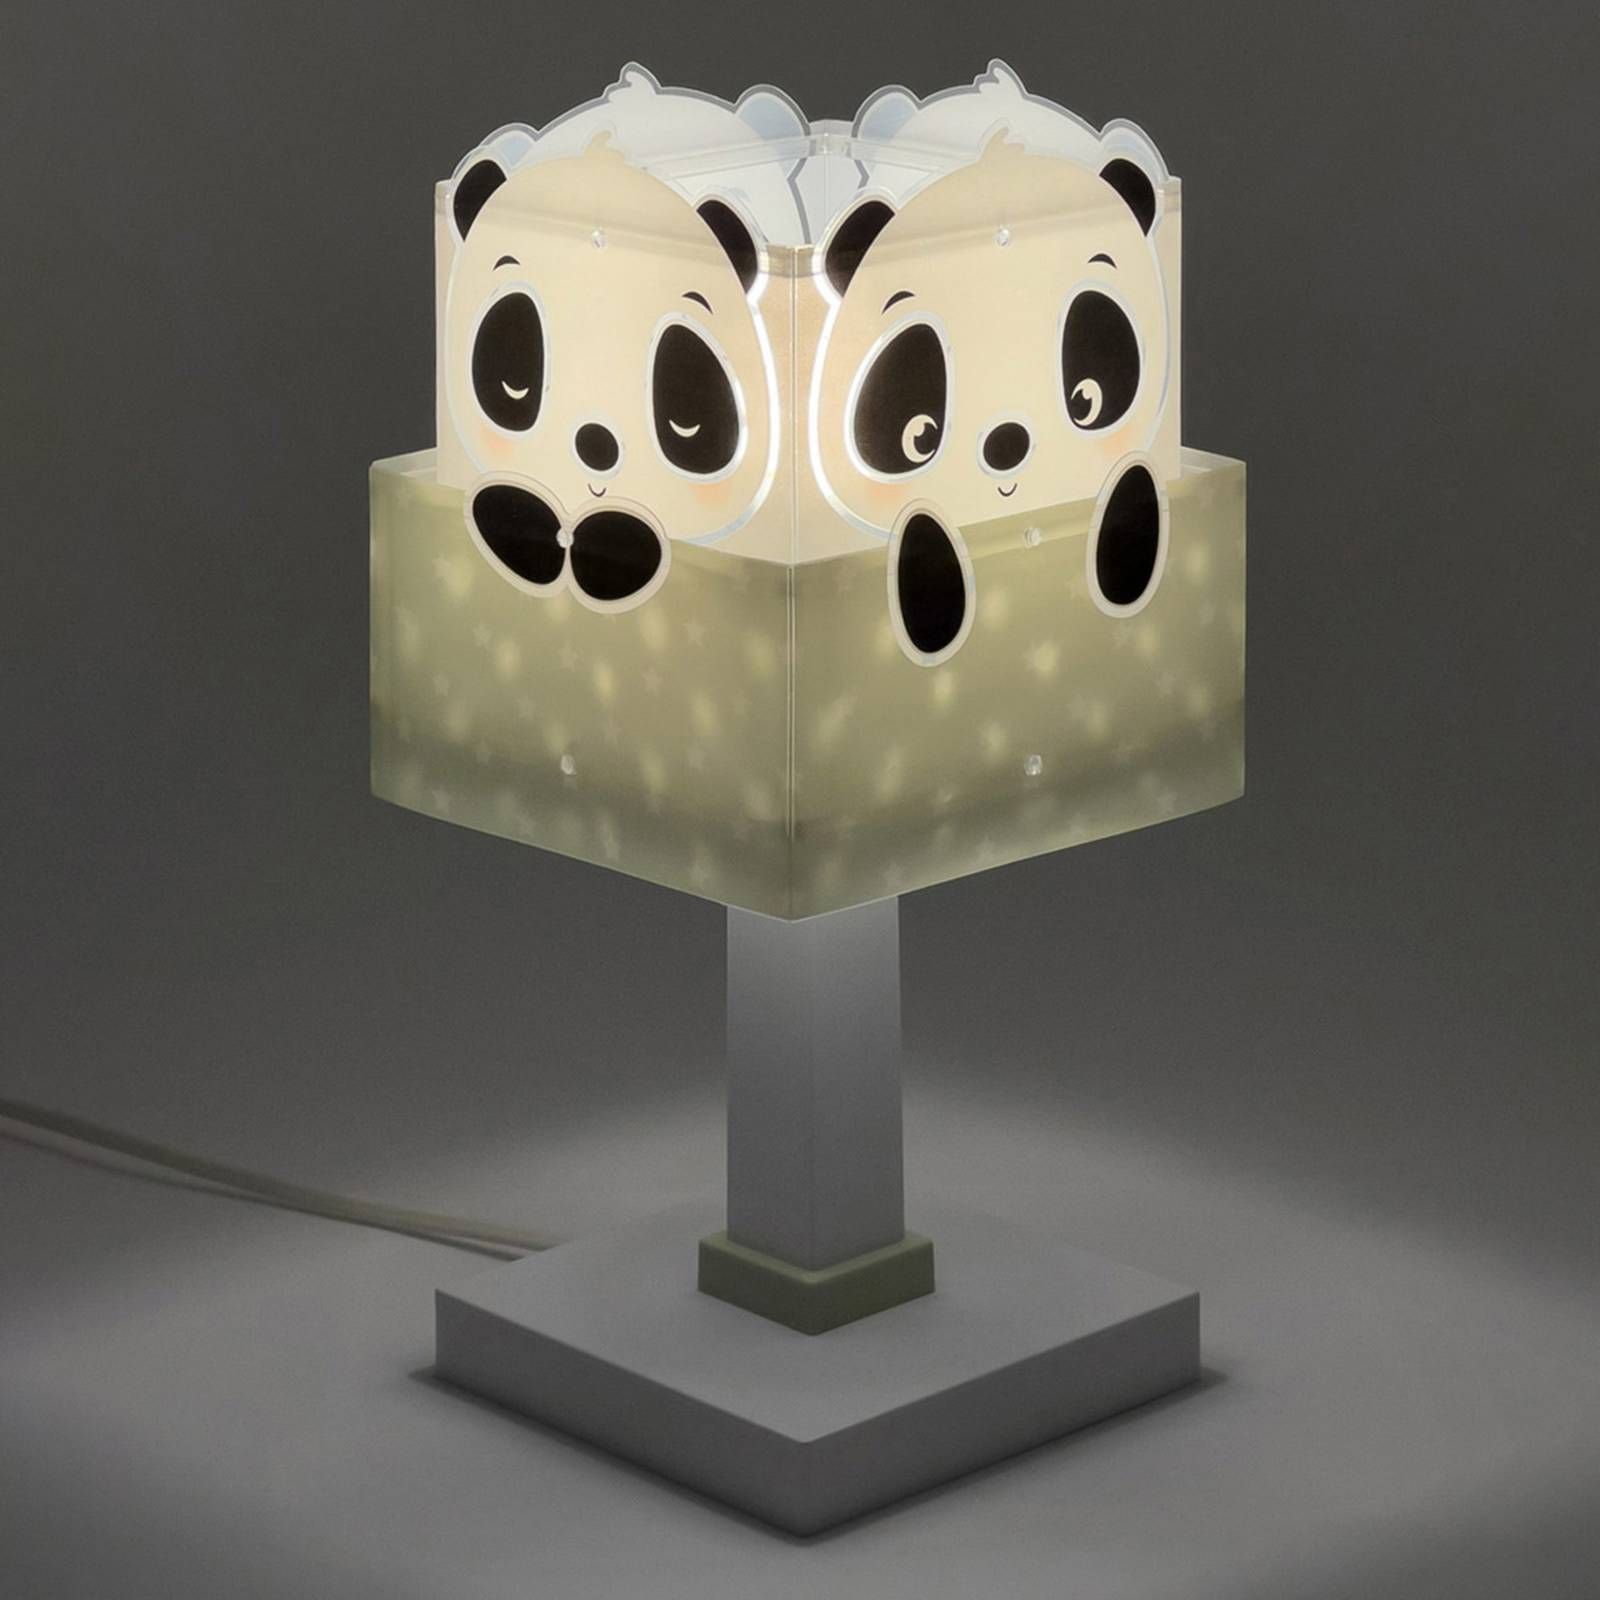 Dalber Panda stolová lampa do detskej izby, zelená, Detská izba, plast, E14, 40W, P: 13.5 cm, L: 13.5 cm, K: 30cm